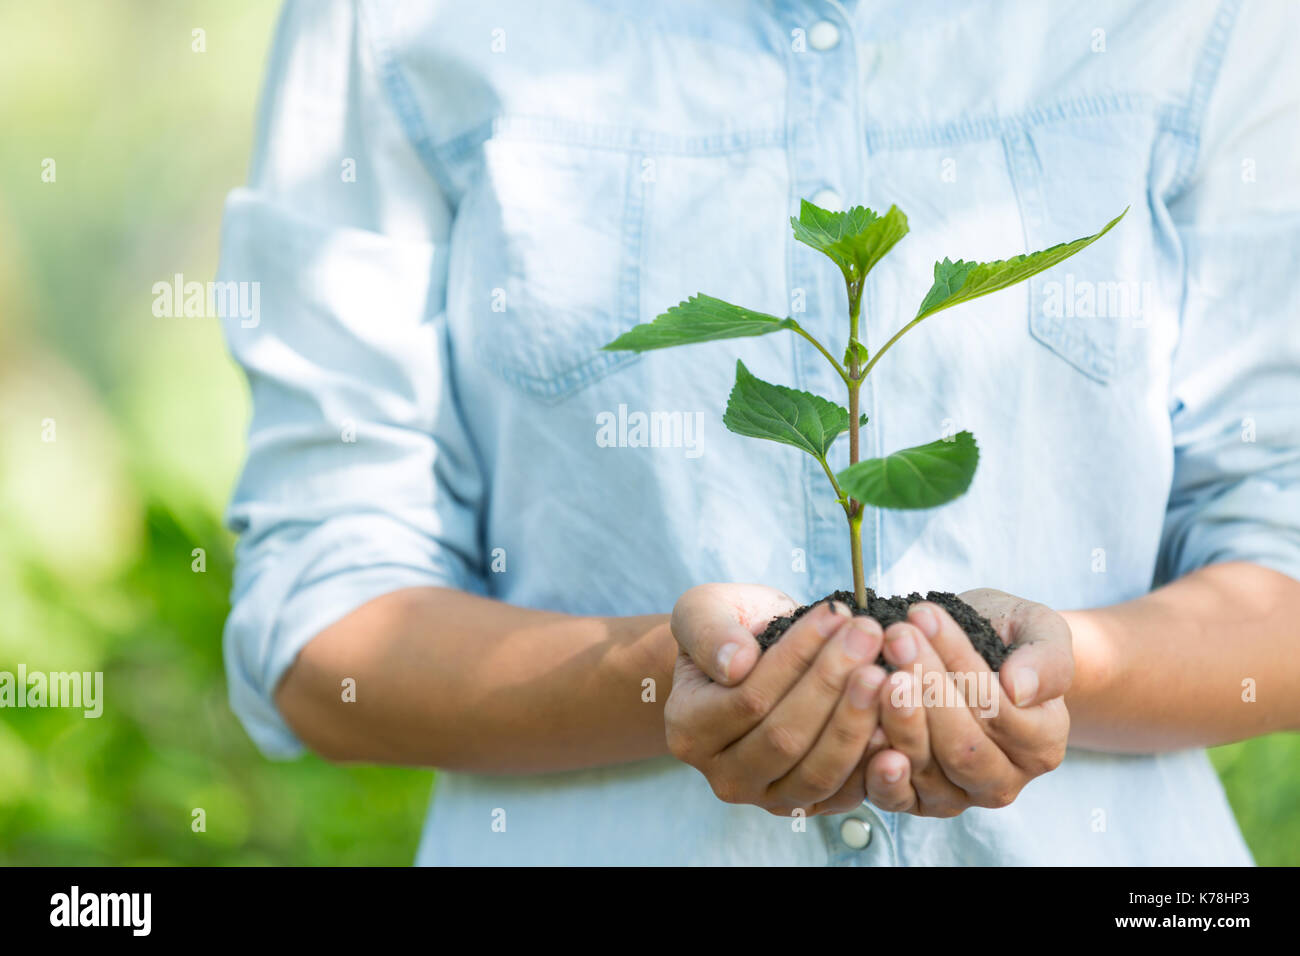 Ecology and people. Благотворительность экология. Экологический знак посади дерево. Саженец в руках. Экологическая справедливость.